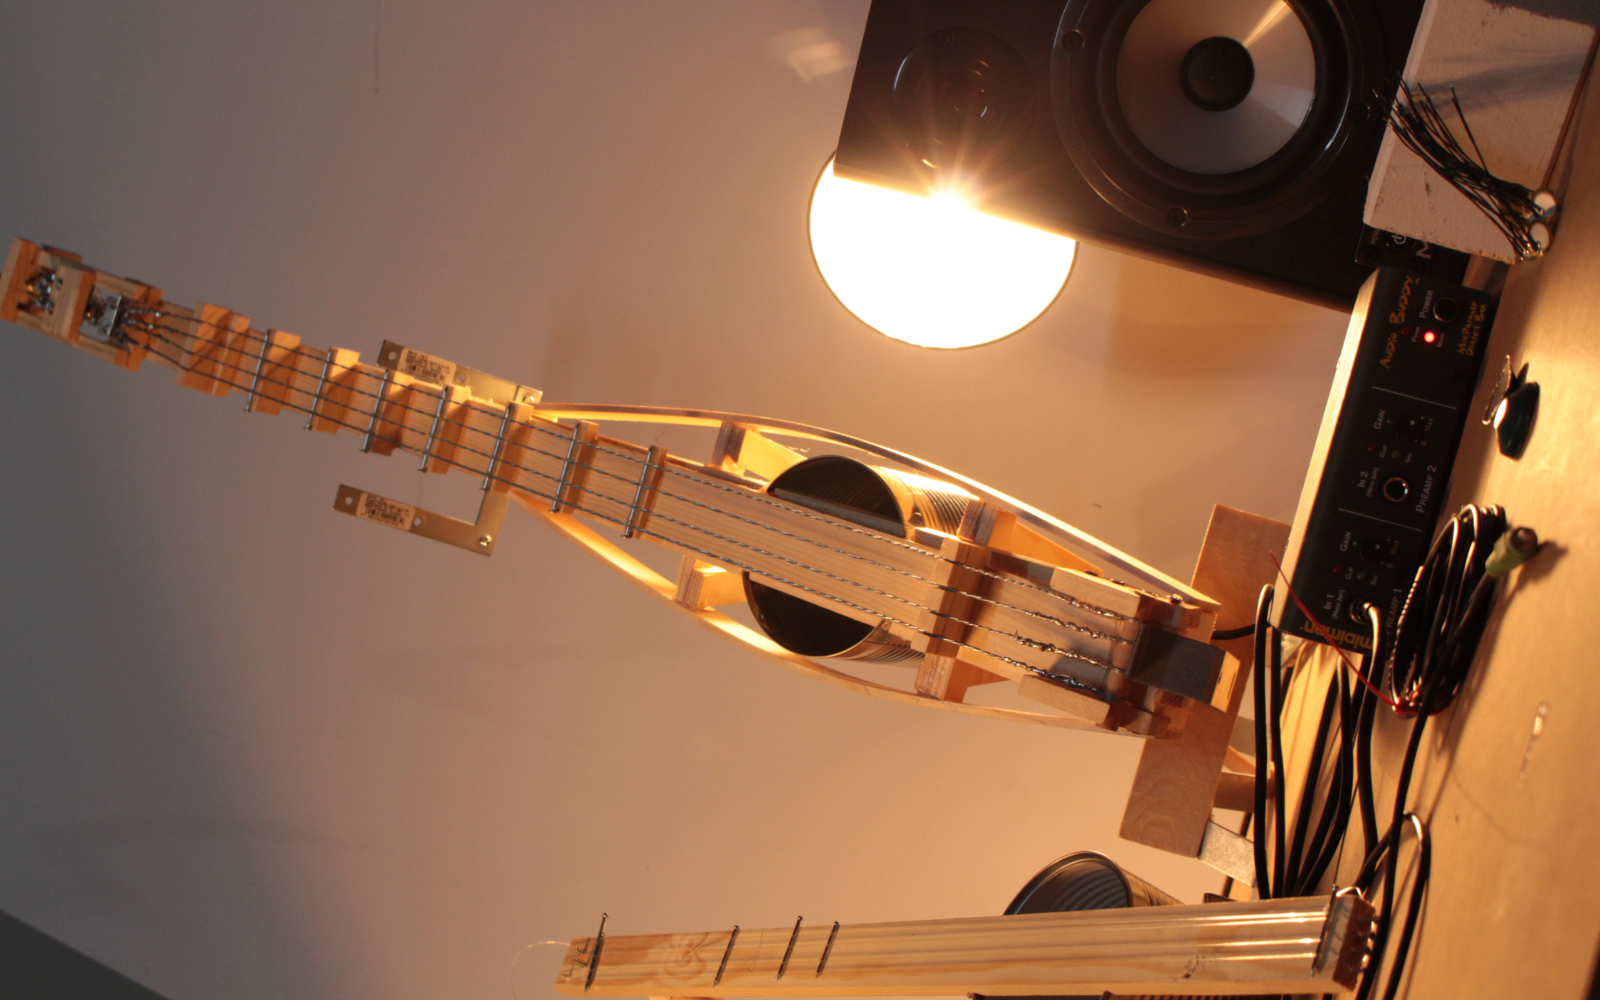 Eine aus dünnen Holzplatten und einer Konservendose bestehende selbst gebastelte Gitarre wird von einer Lampe angestrahlt. Sie steht aufrecht und daneben ist ein Lautsprecher aufgestellt.